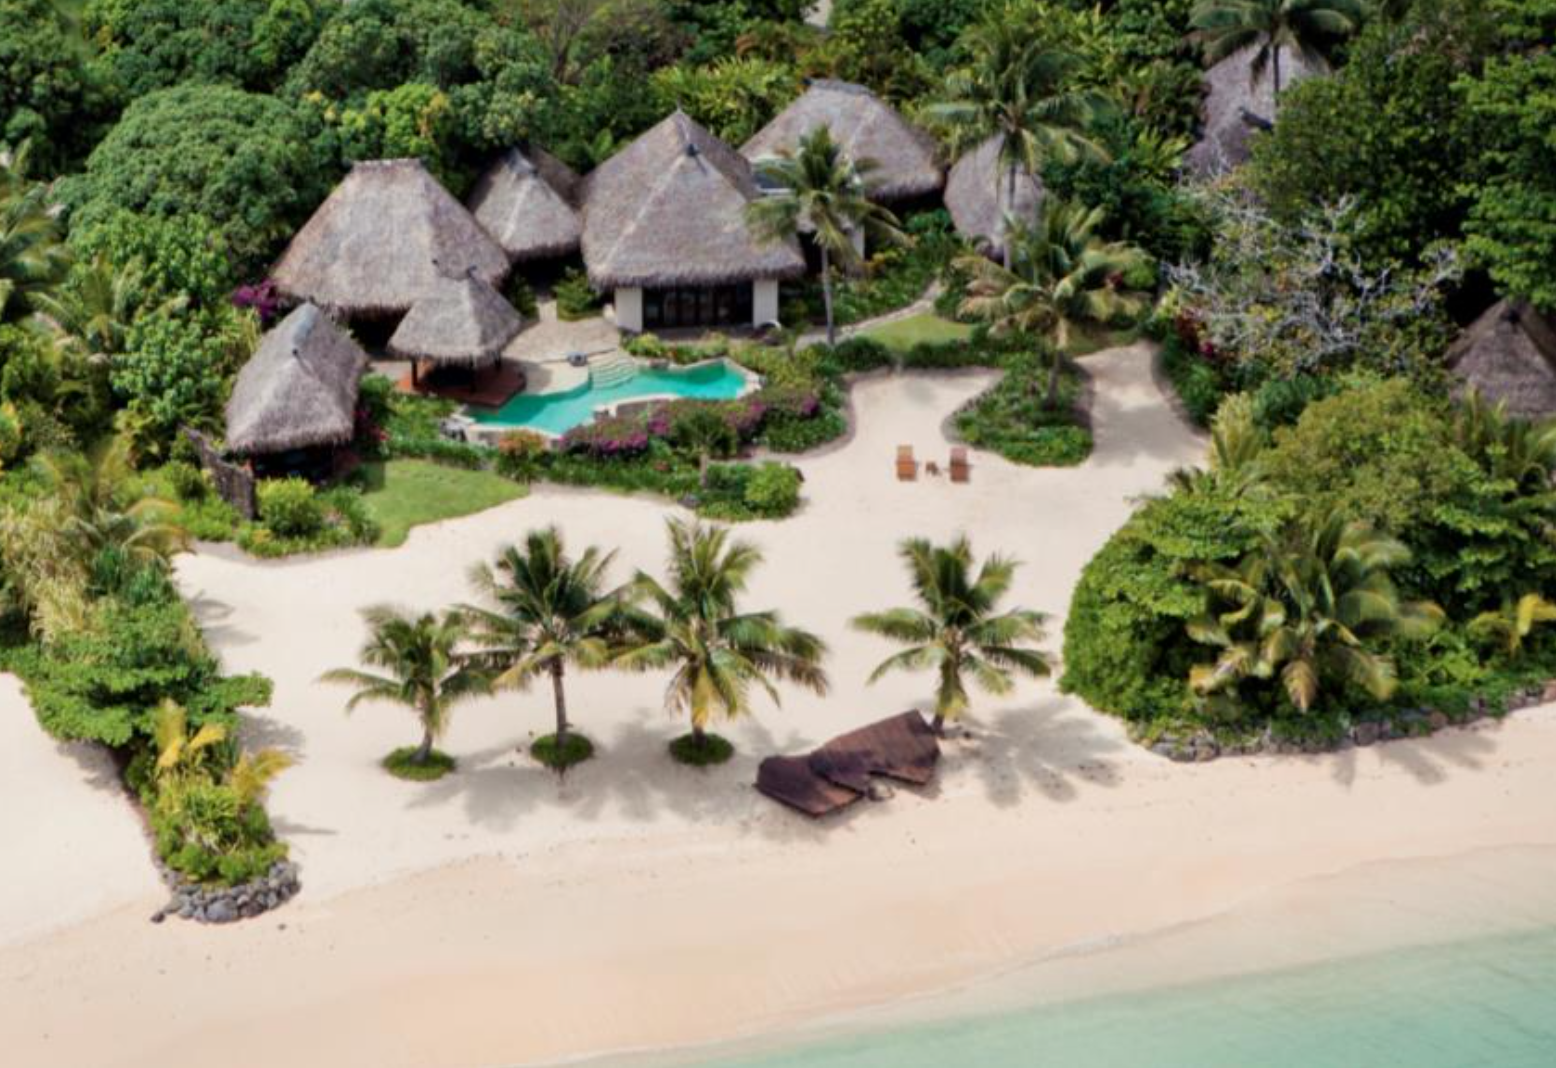 Une nouvelle île privée avec résidences de luxe inaugurée dans le Pacifique Sud